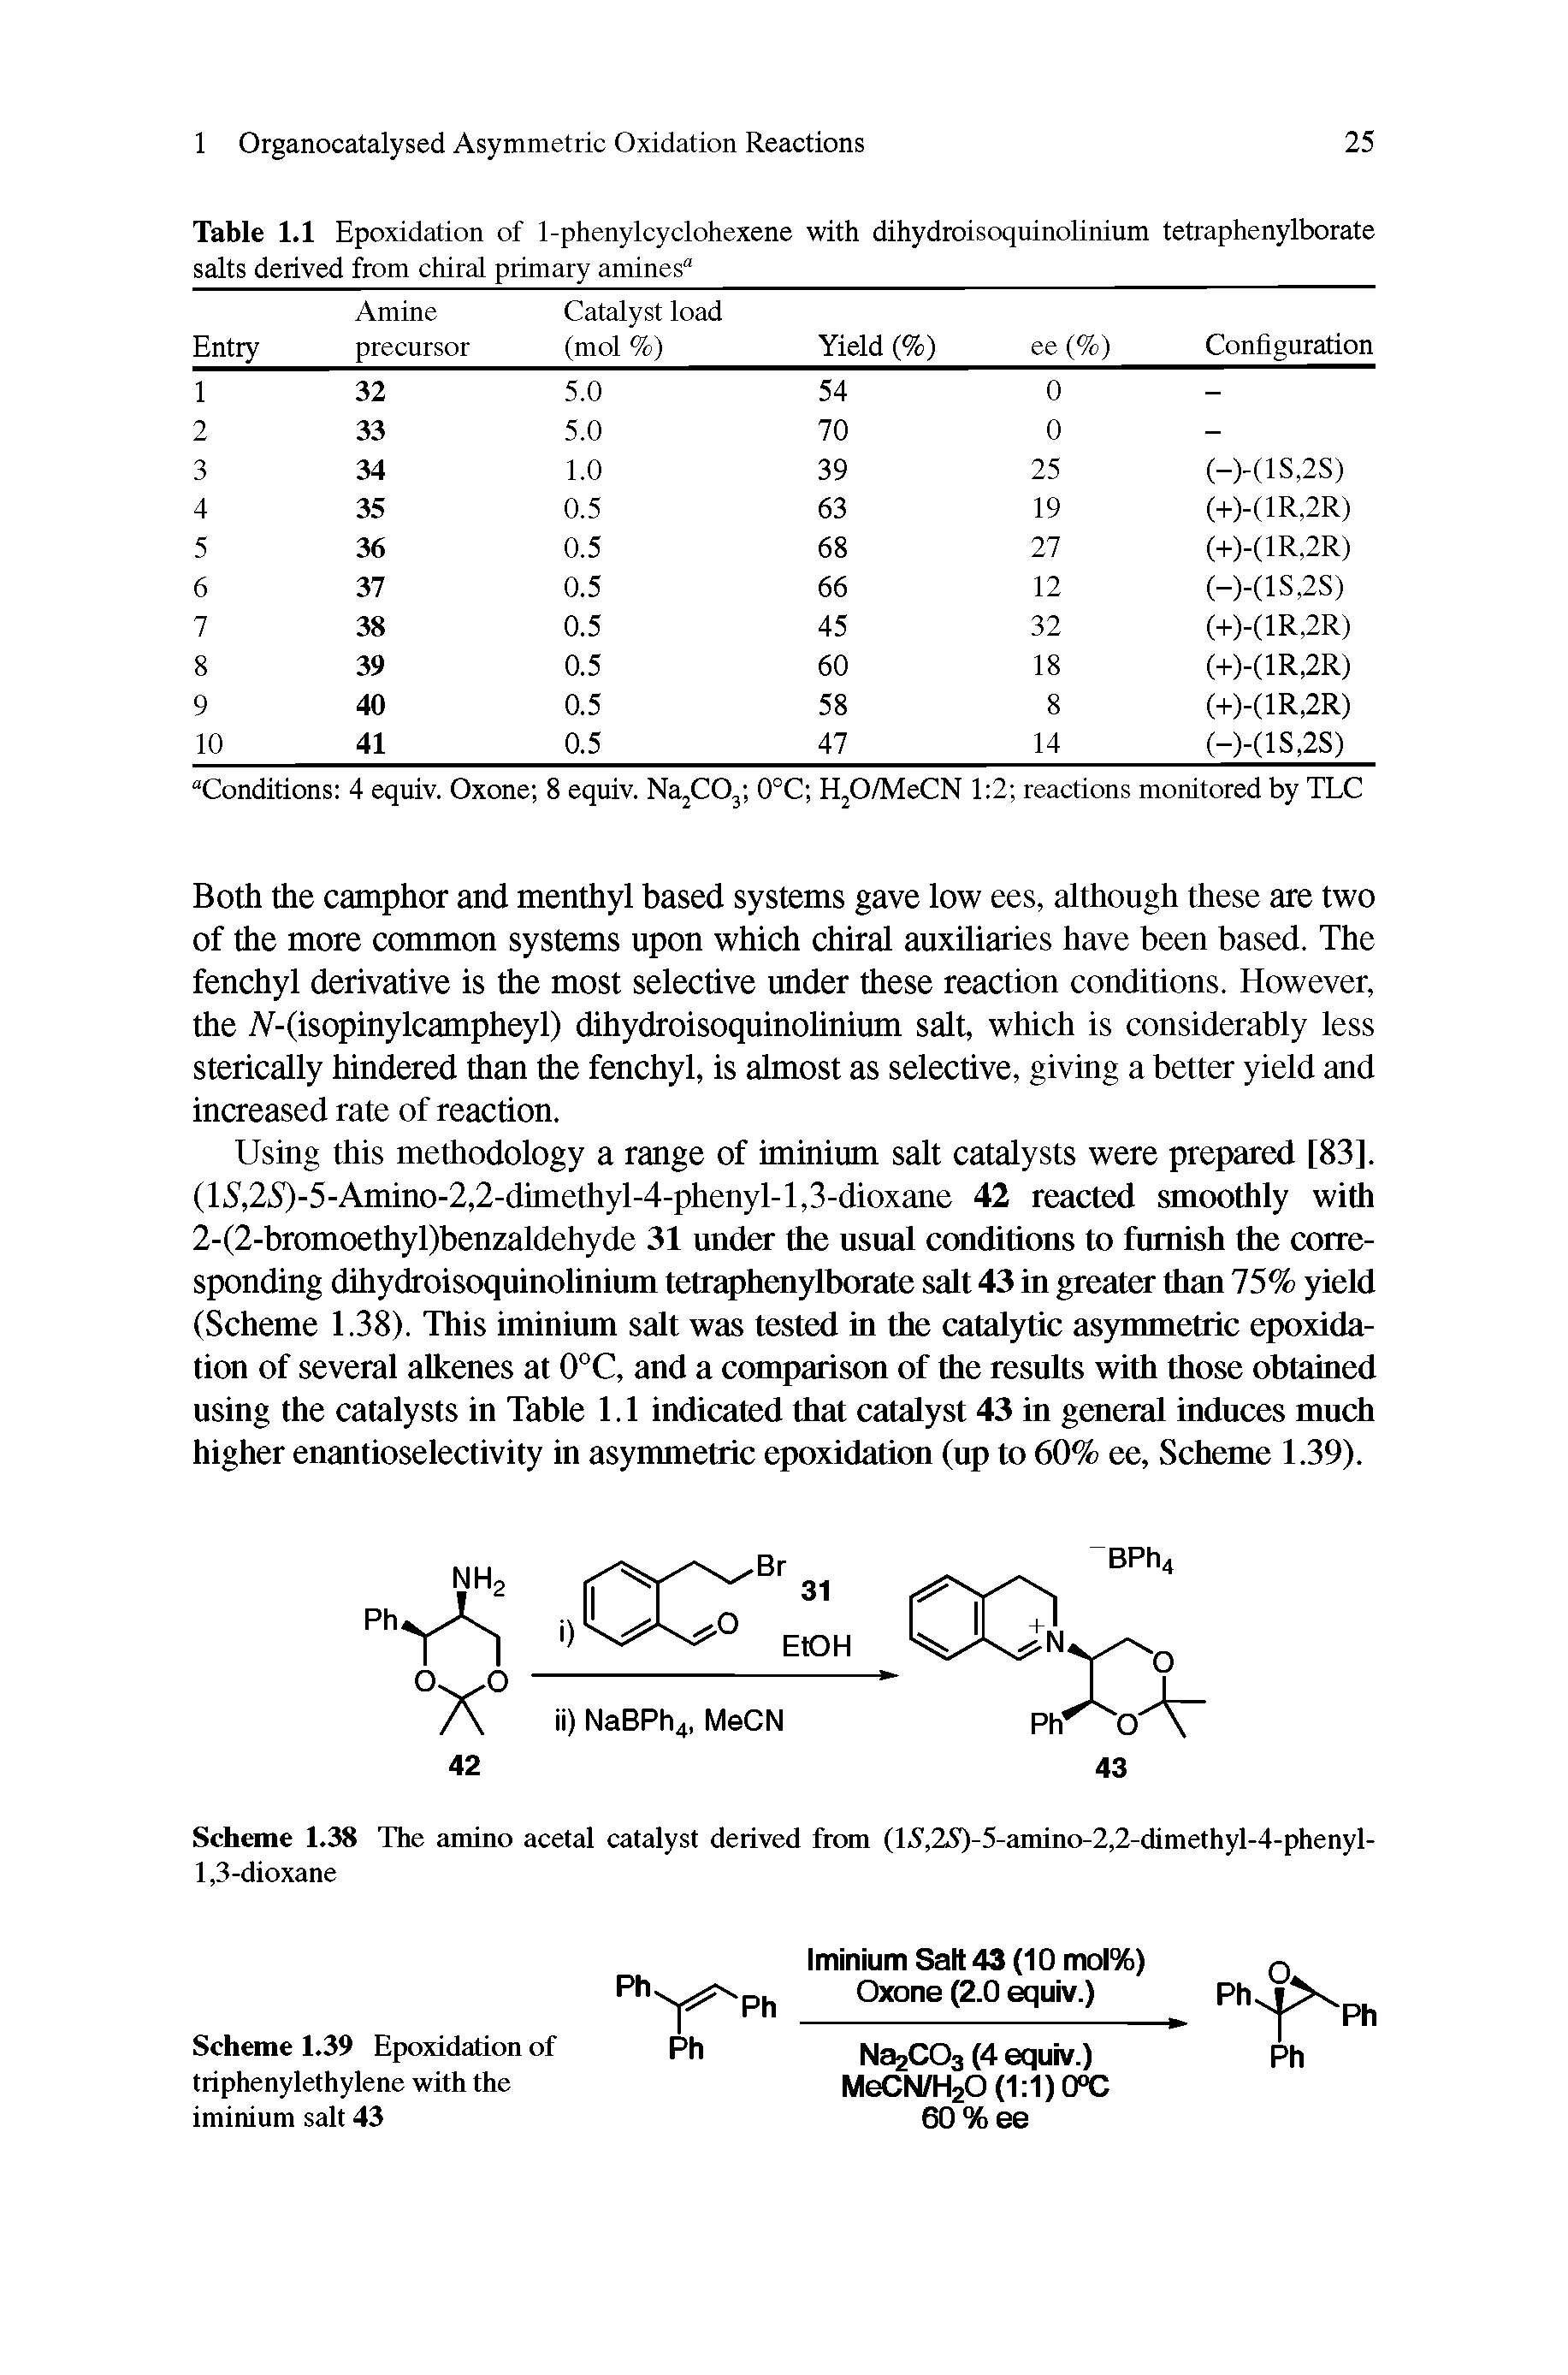 Table 1.1 Epoxidation of 1-phenylcyclohexene with dihydroisoquinolinium tetraphenylborate...